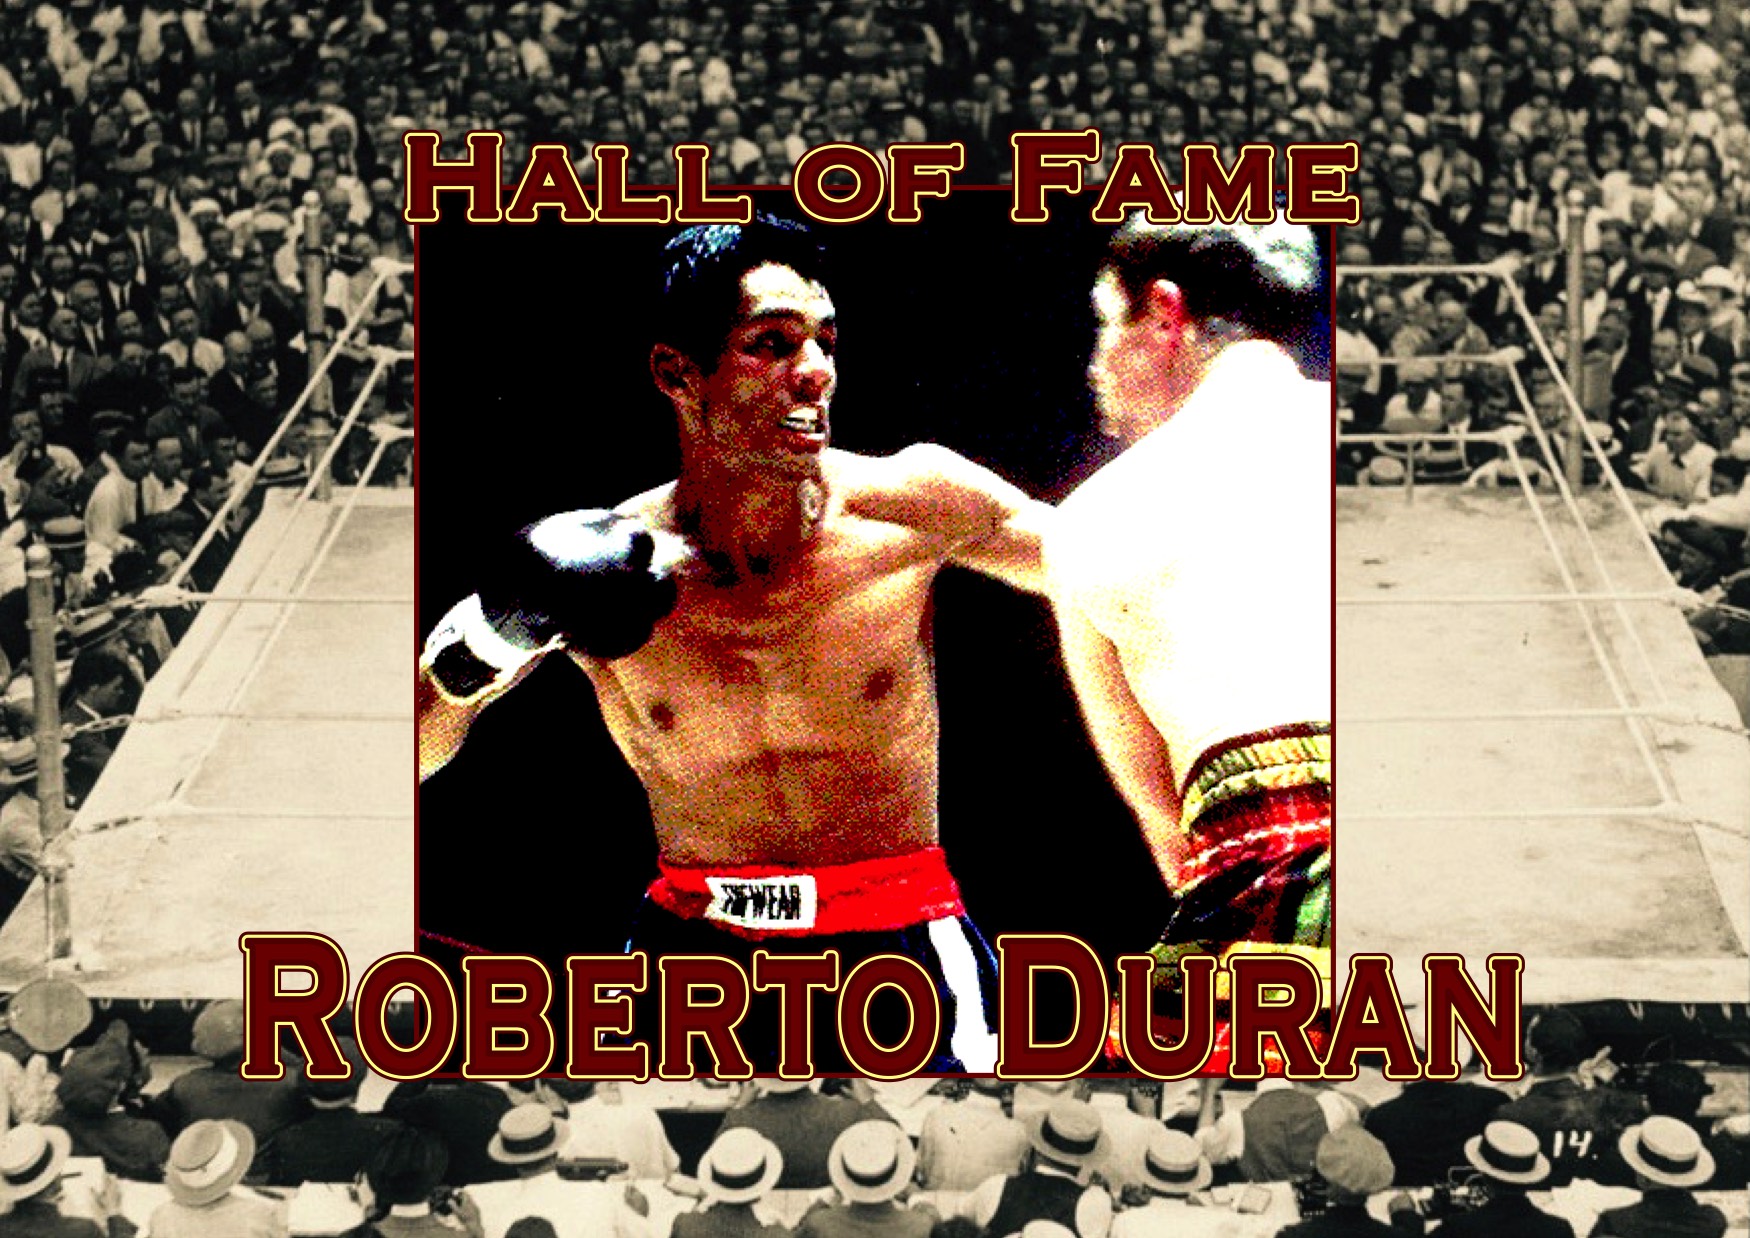 Hall of Fame: ROBERTO DURAN